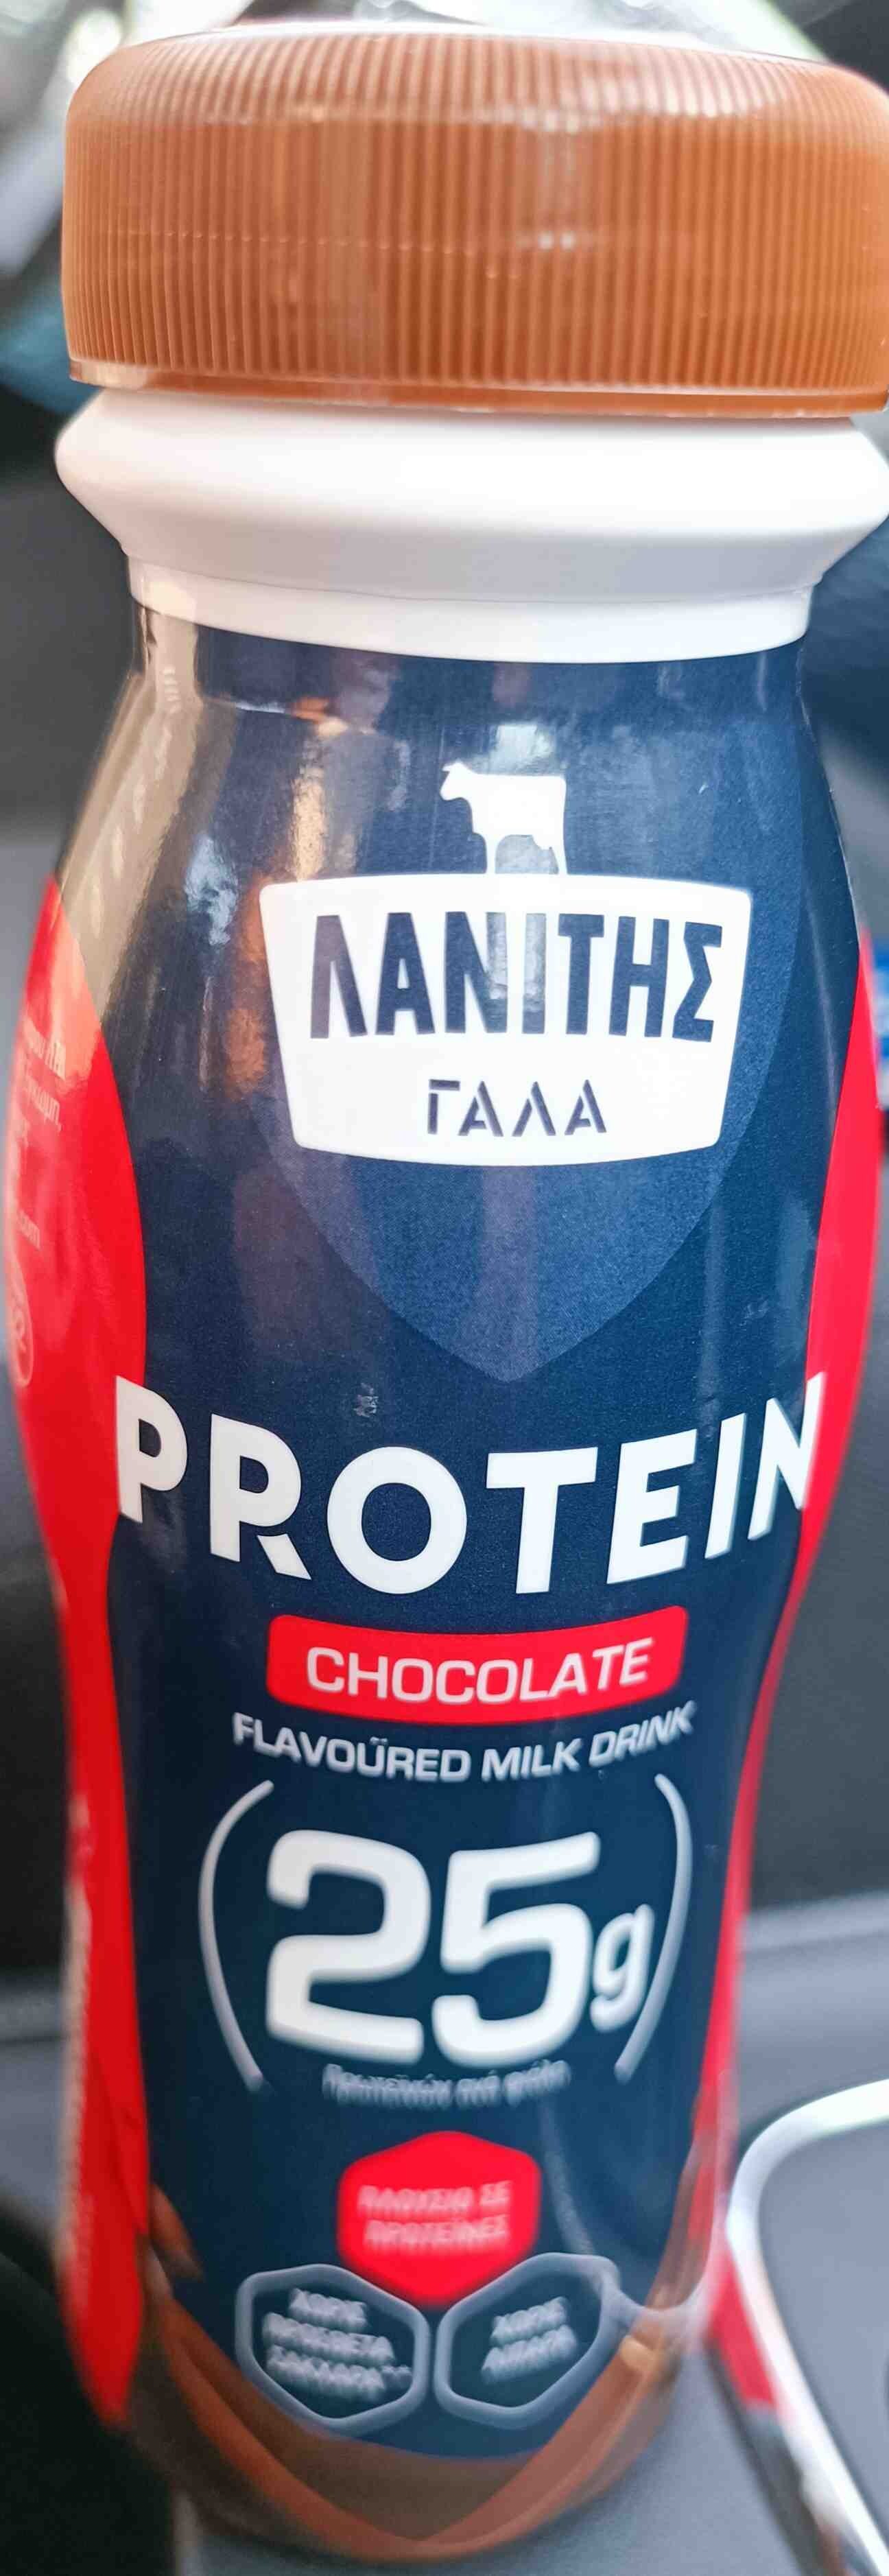 Protein Chocolate Flavoured Milk Drink - Προϊόν